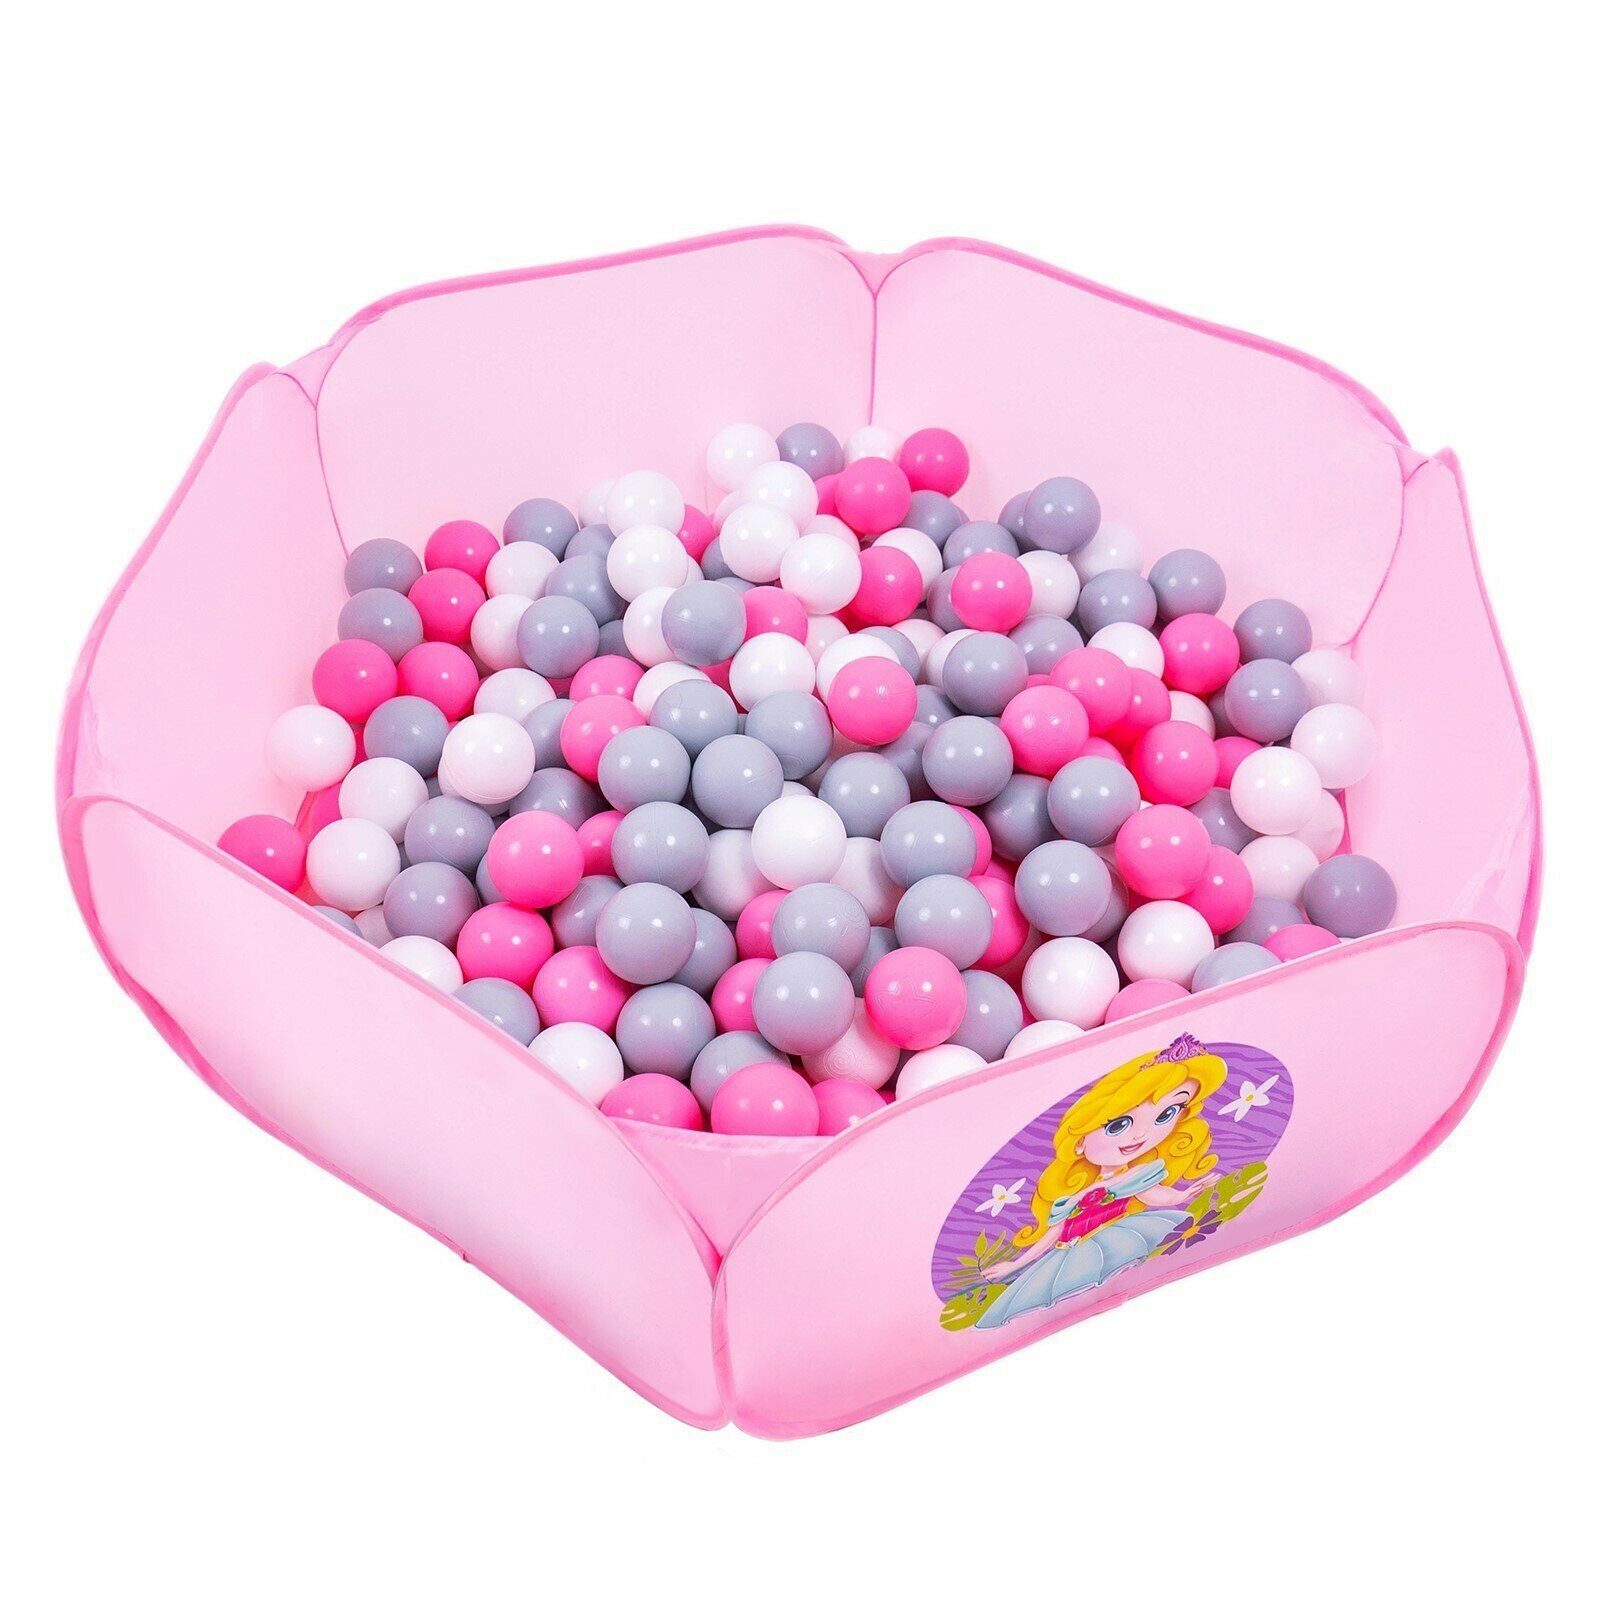 Шарики для сухого бассейна с рисунком Розовые, диаметр шара 7,5 см, набор 150 штук, цвет розовый, белый, серый